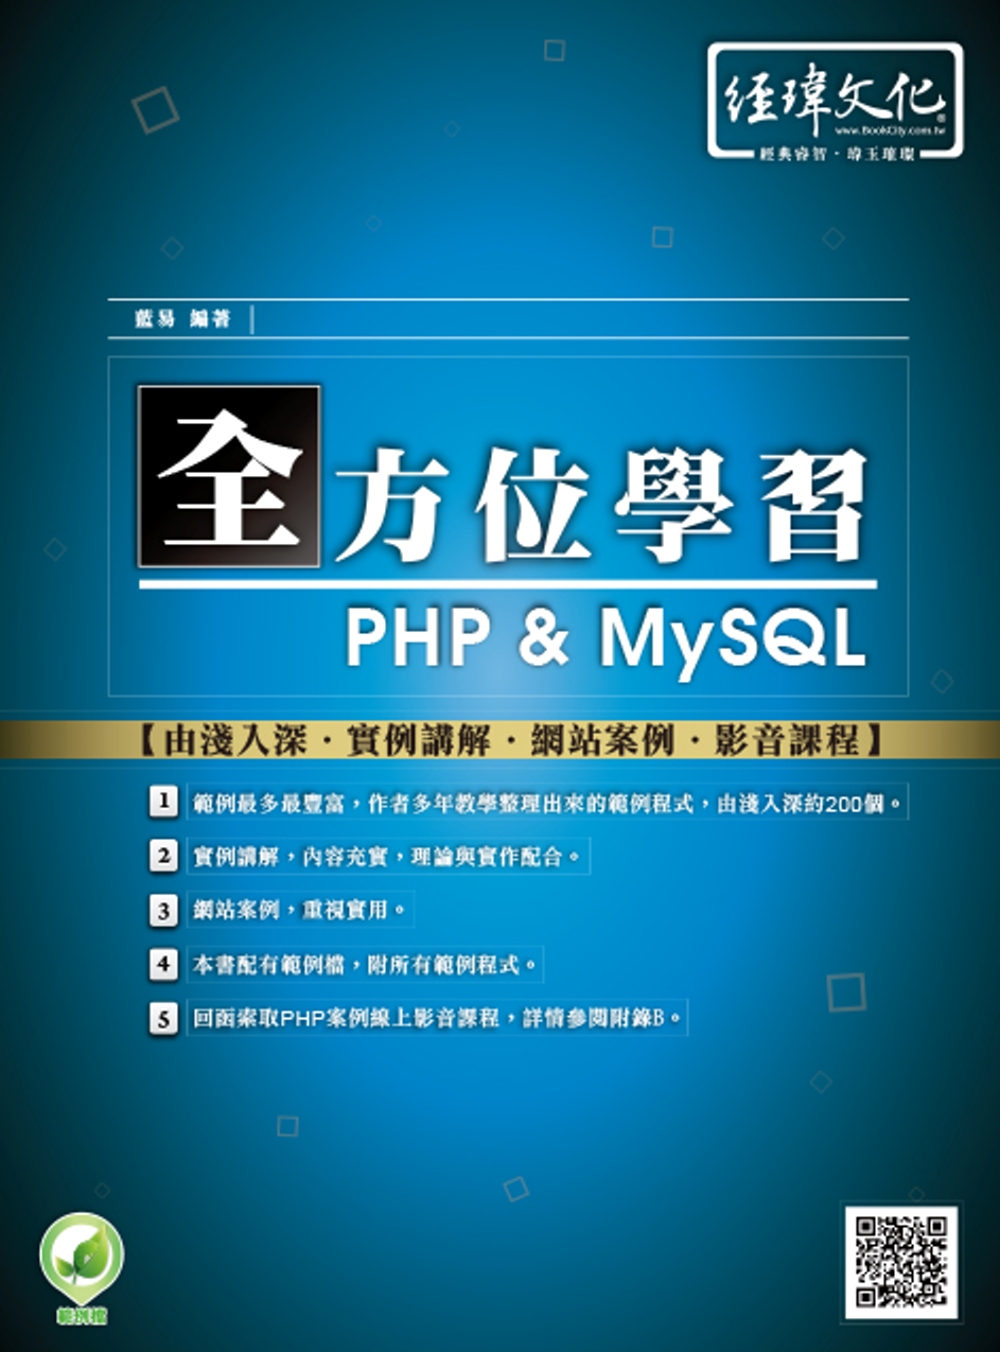 全方位學習 PHP & MySQL(附綠色範例檔+線上影片回...